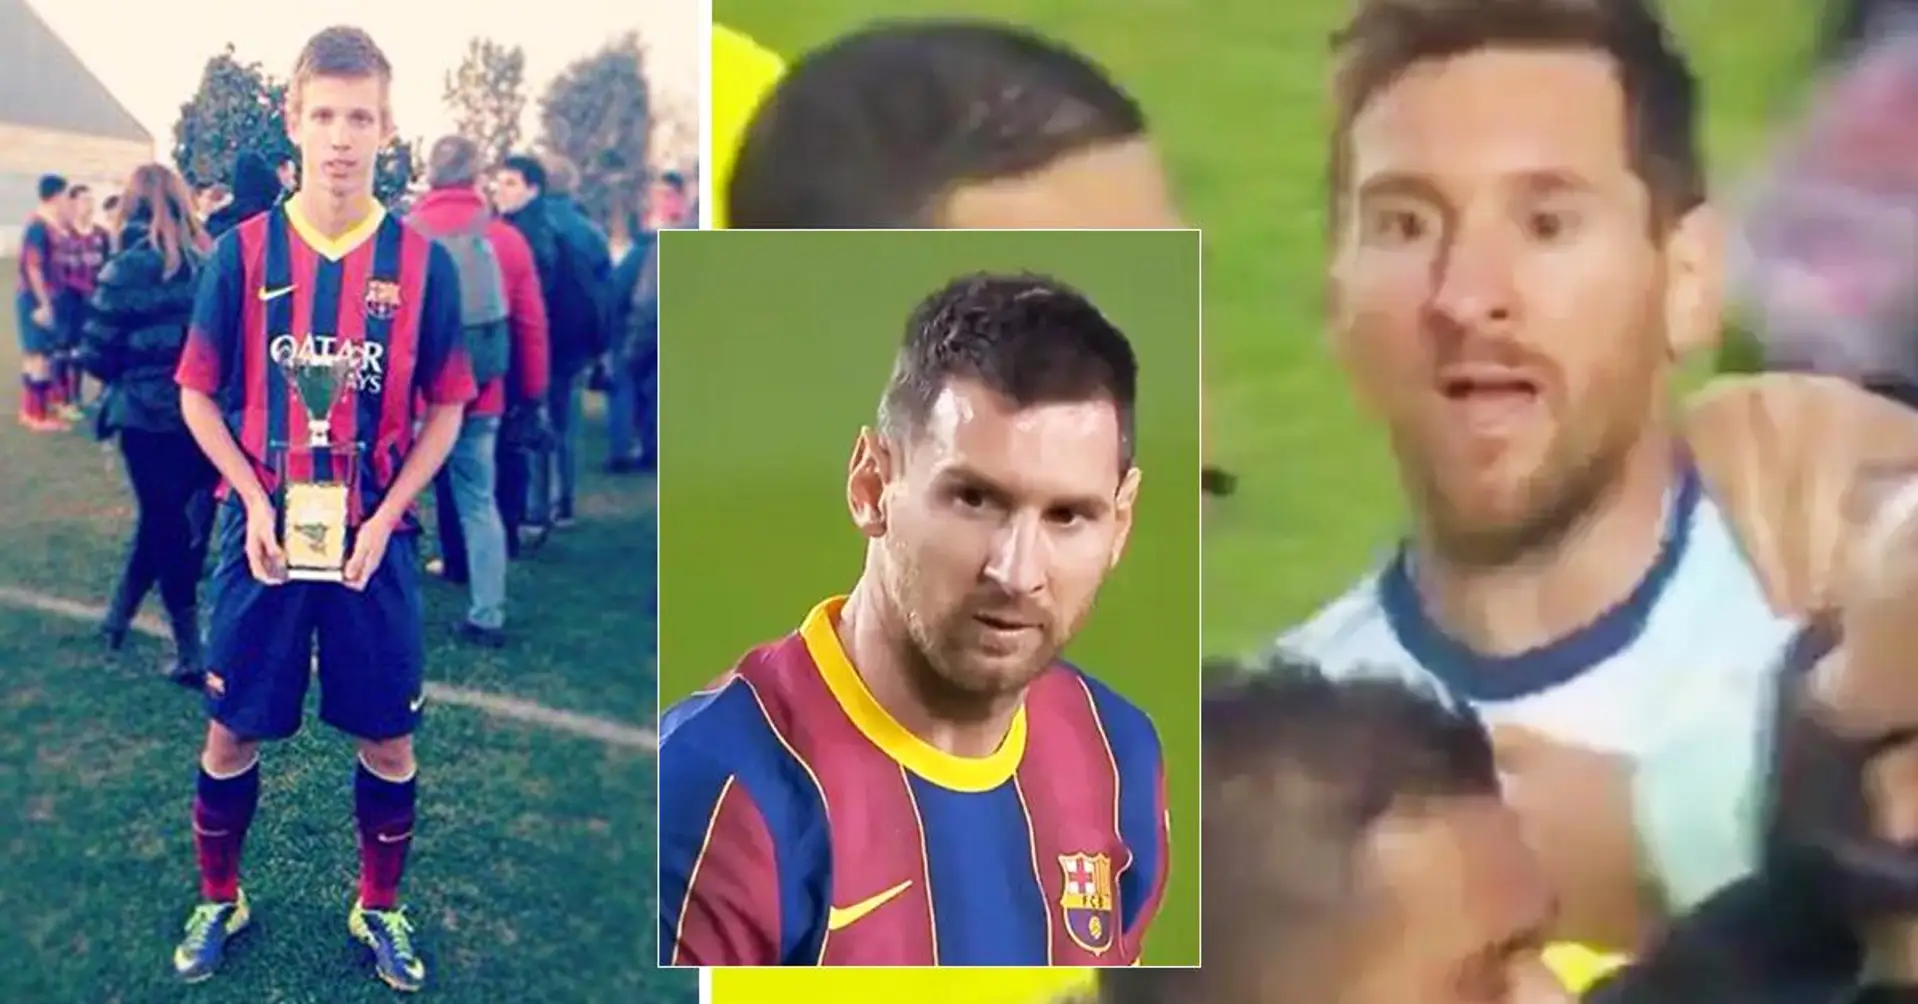 "Nein, danke, mir geht es gut": La-Masia-Star erklärt, warum er sich geweigert hat, ein Foto mit Lionel Messi machen zu lassen